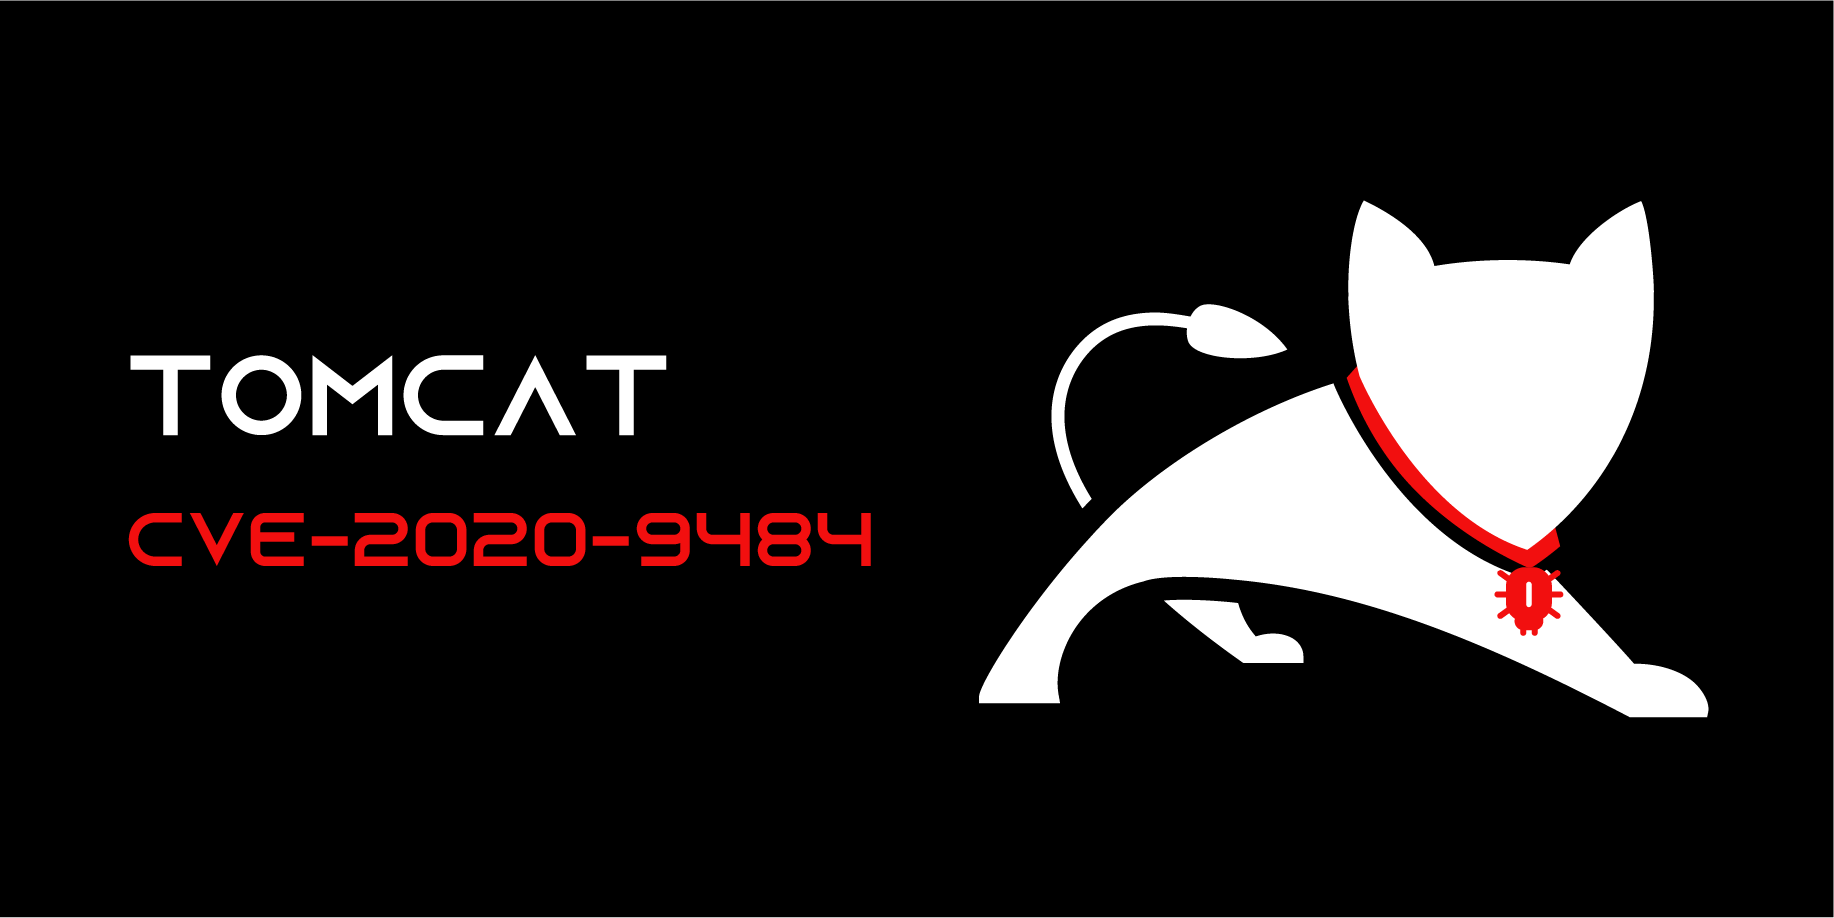 Tomcat CVE-2020-9484